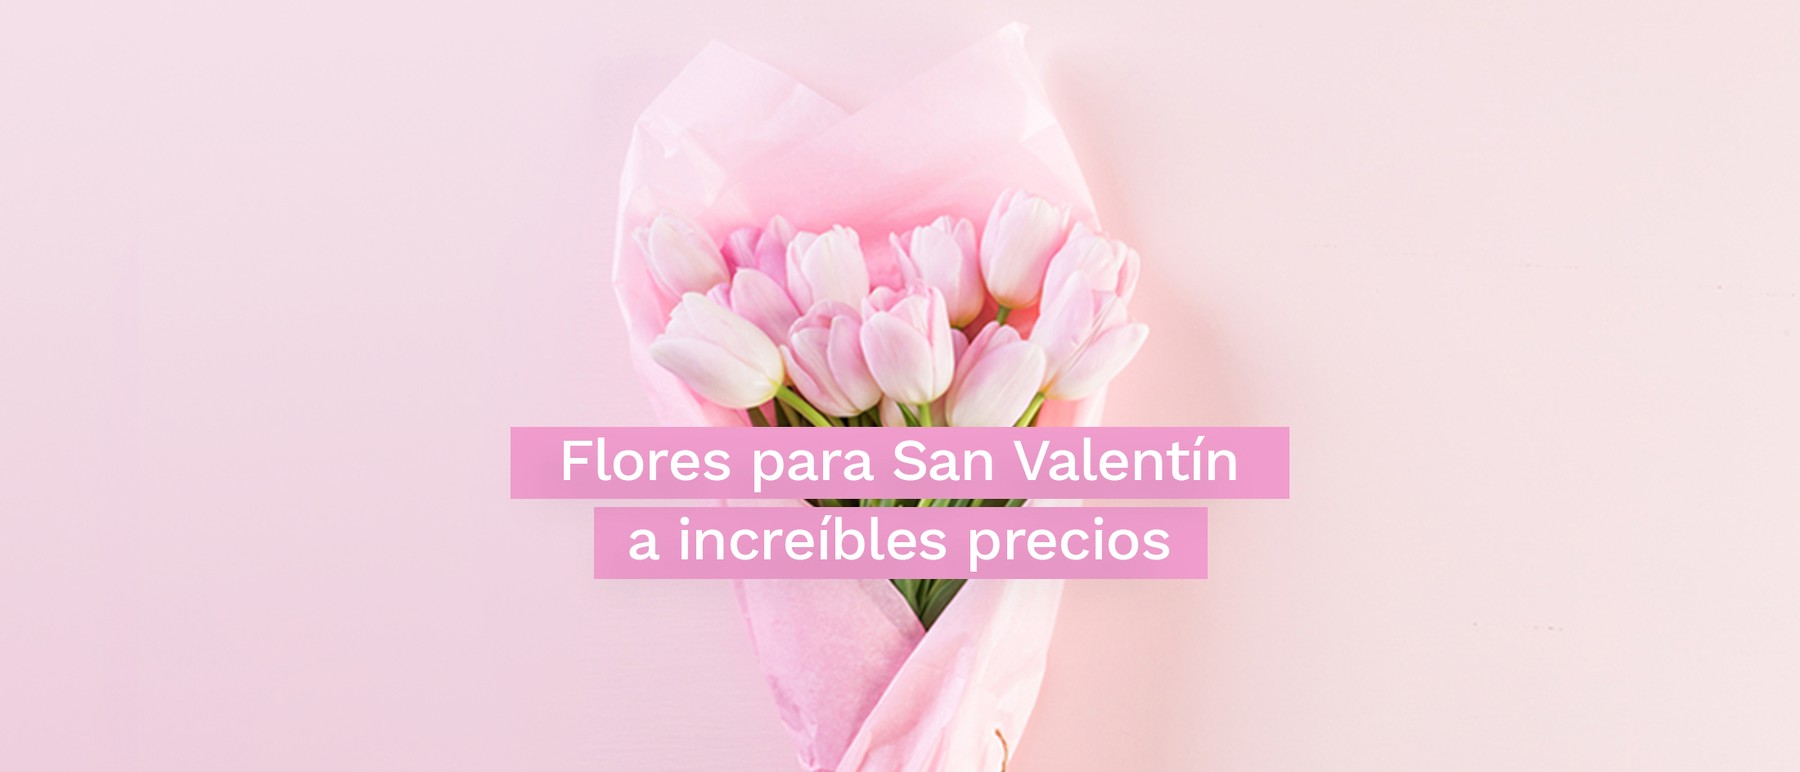 Las flores nunca pasan de moda, elige las mejores y a excelentes precios para este San Valentín.